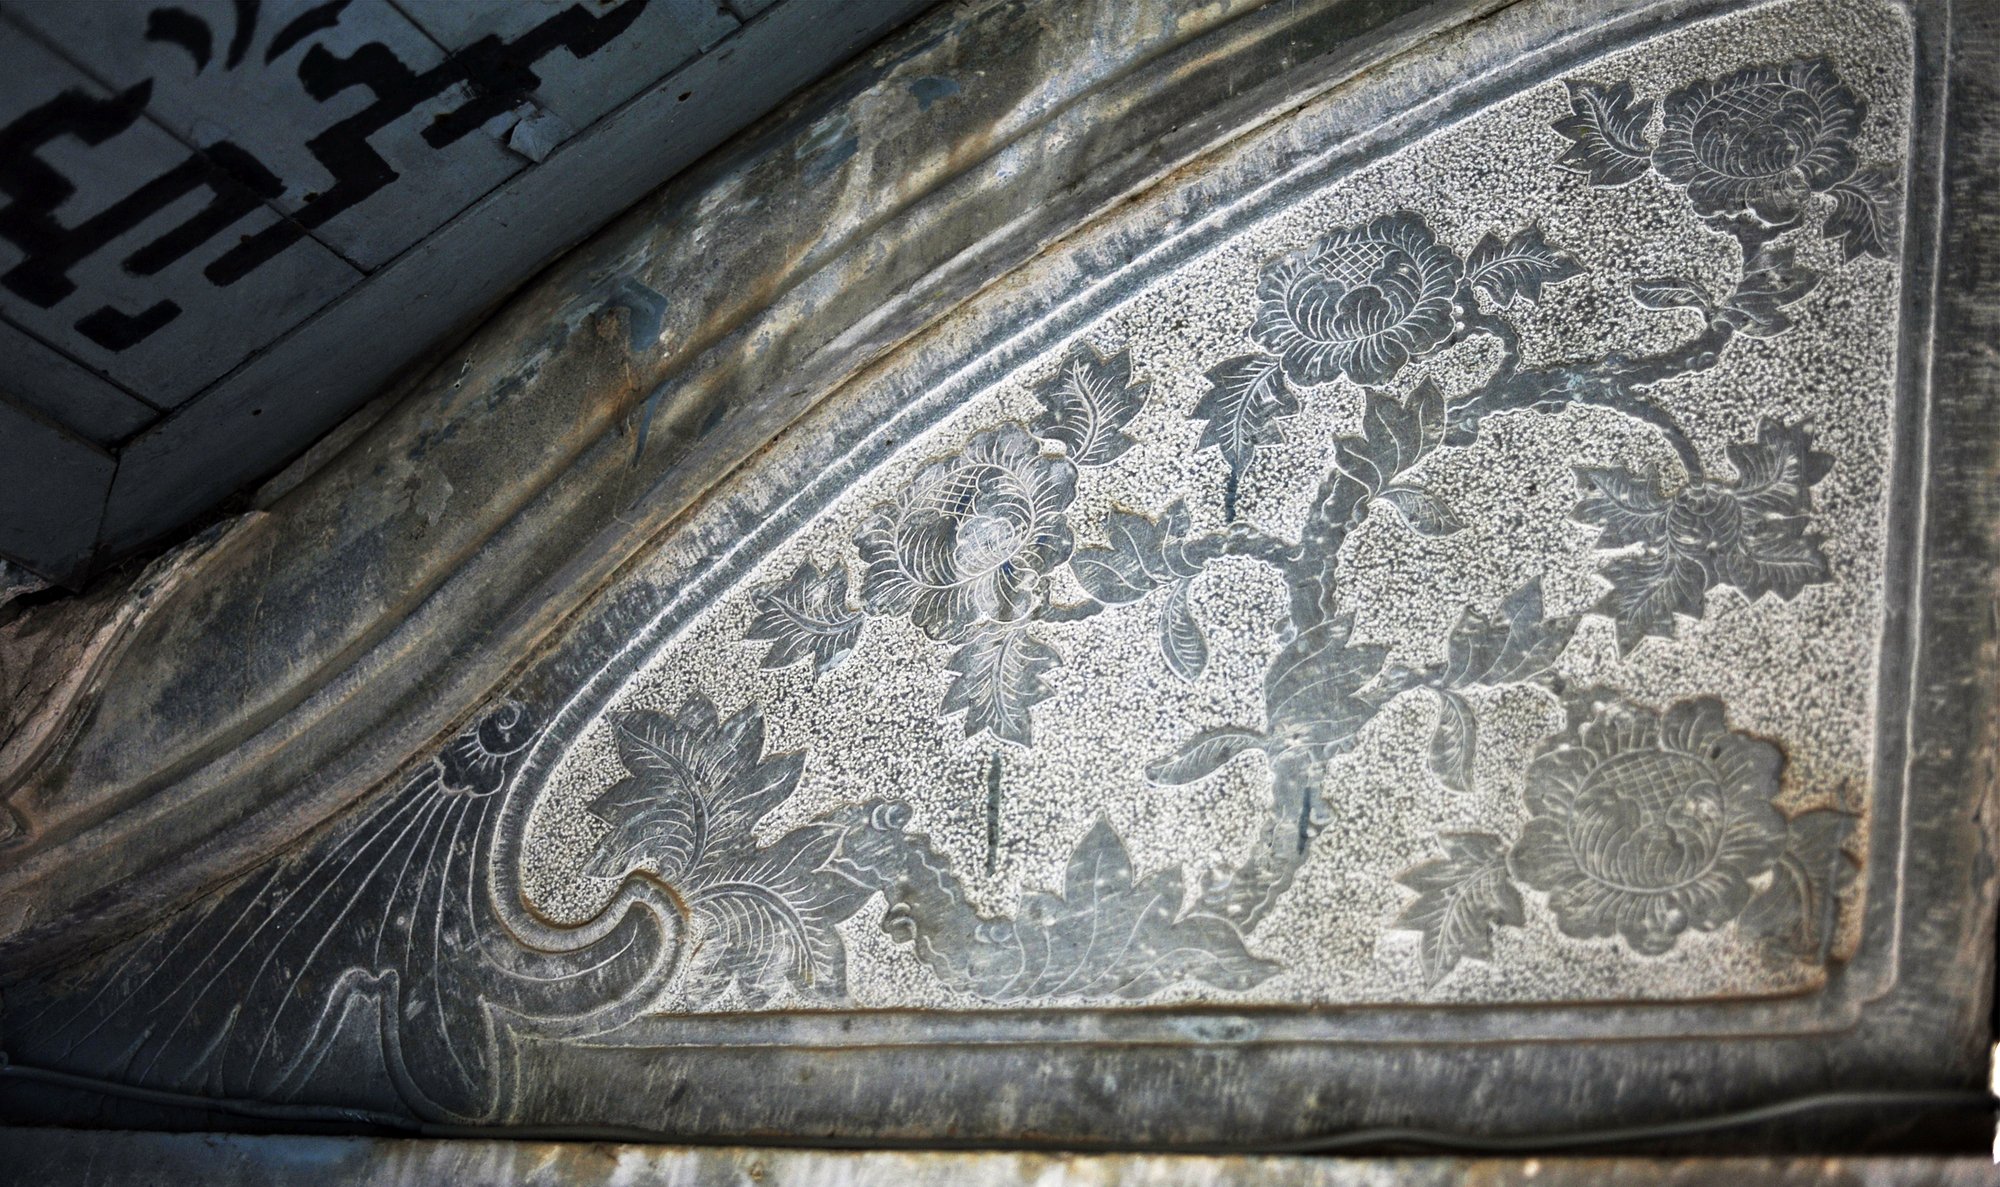 Chiêm ngắm ngôi nhà thờ được làm hoàn toàn bằng đá ở Ninh Bình - Ảnh 11.